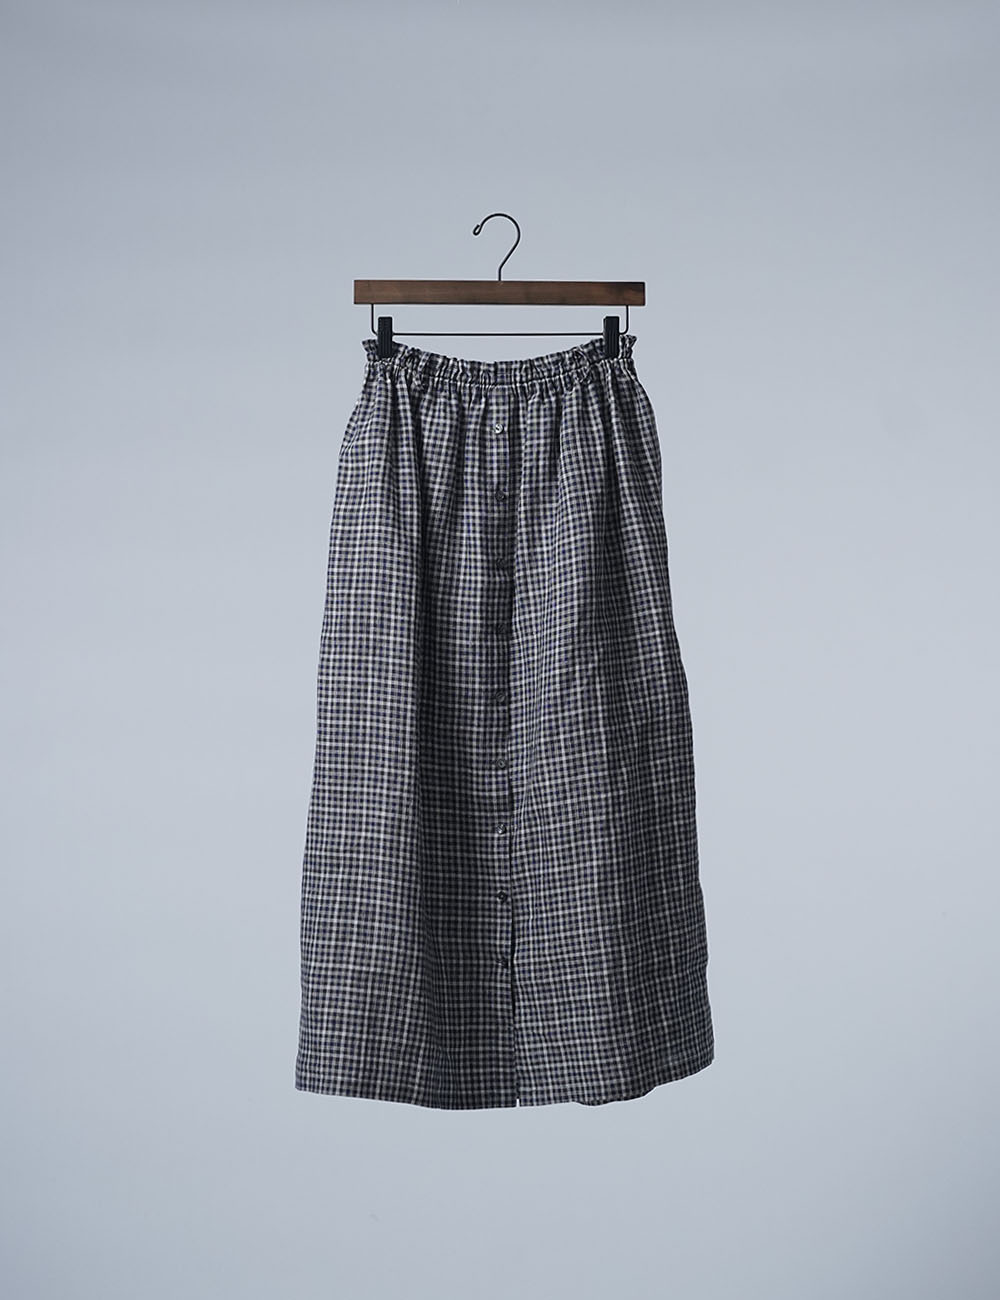 Linen Check Skirt  トーンオントーンチェックのスカート /チェック柄 s005d-cbr2